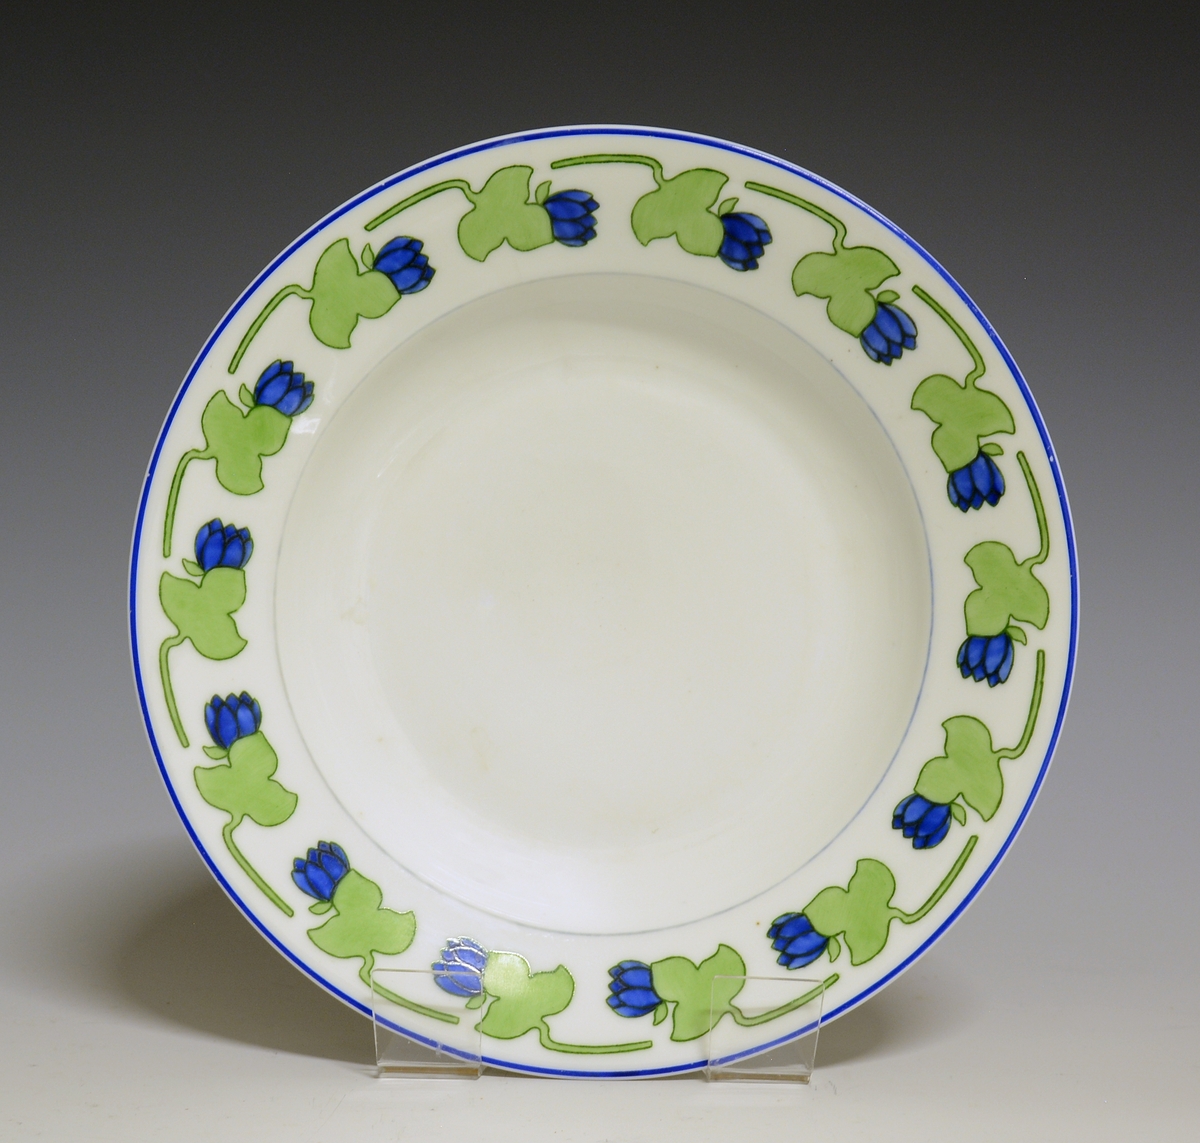 Dyp tallerken i porselen. Hvit glasur. Stilisert bord med blå blomst og grønt blad rundt  fanen.
Modellnr: 15.2